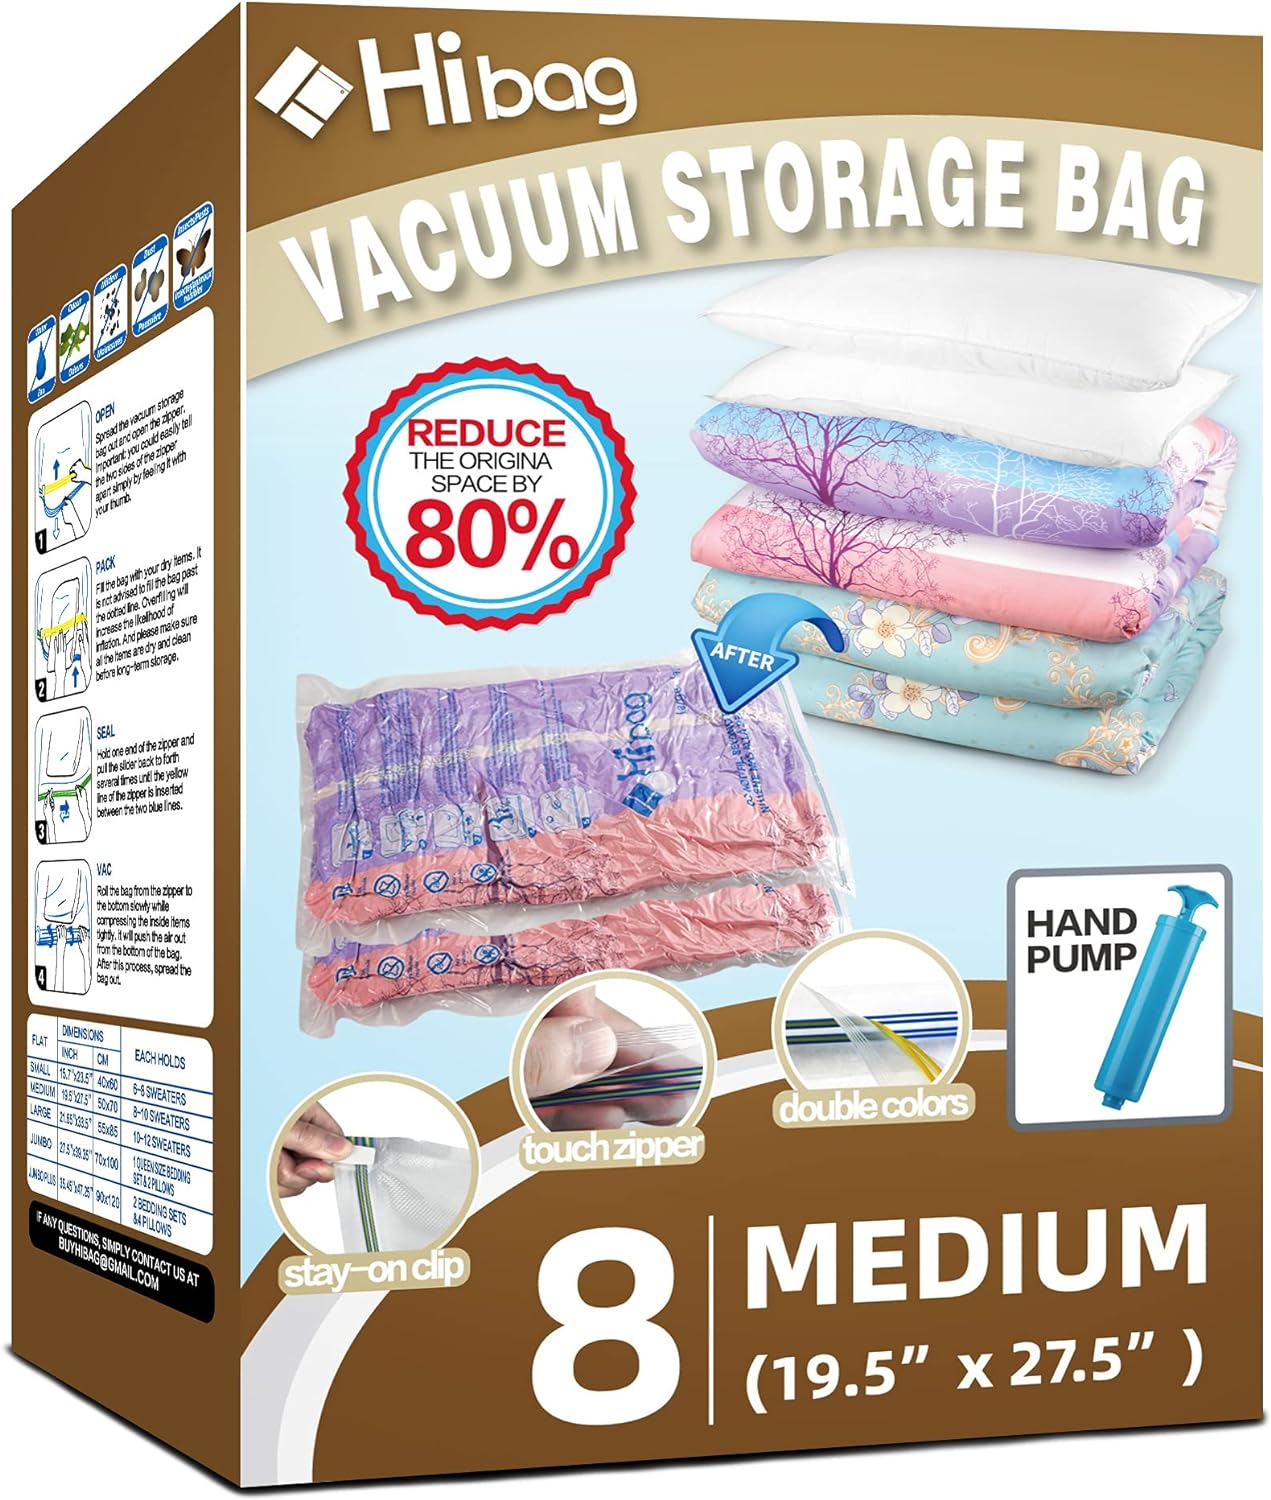 Space Saver Bags, 8 Medium Vacuum Storage Bags for Clothes, Pump Included (8-Medium)